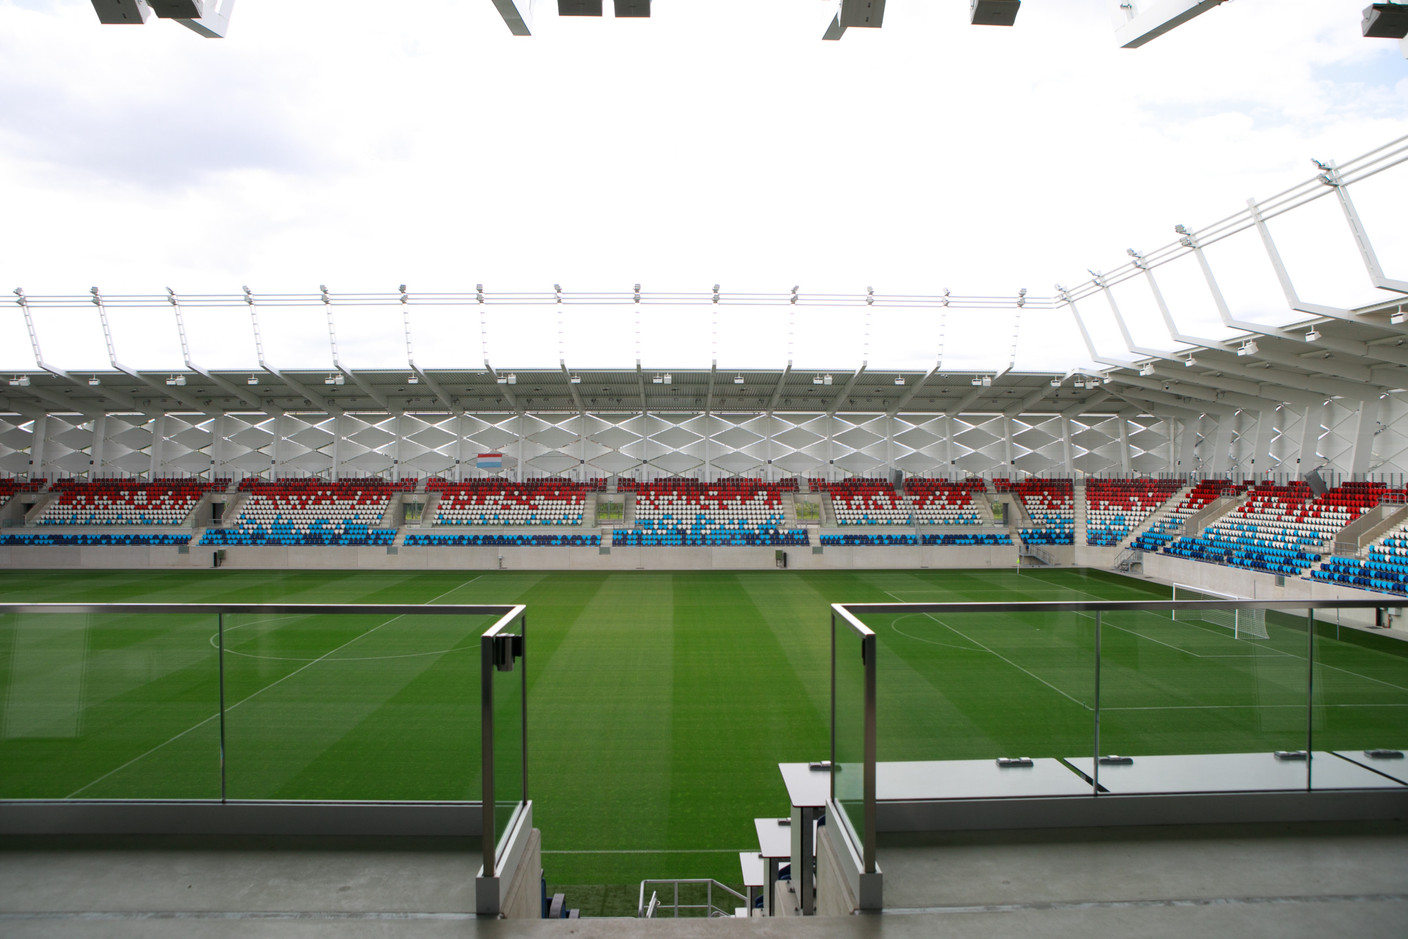 Le Stade de Luxembourg est équipé de 540 «business seats».  (Photo: Matic Zorman/Maison Moderne)